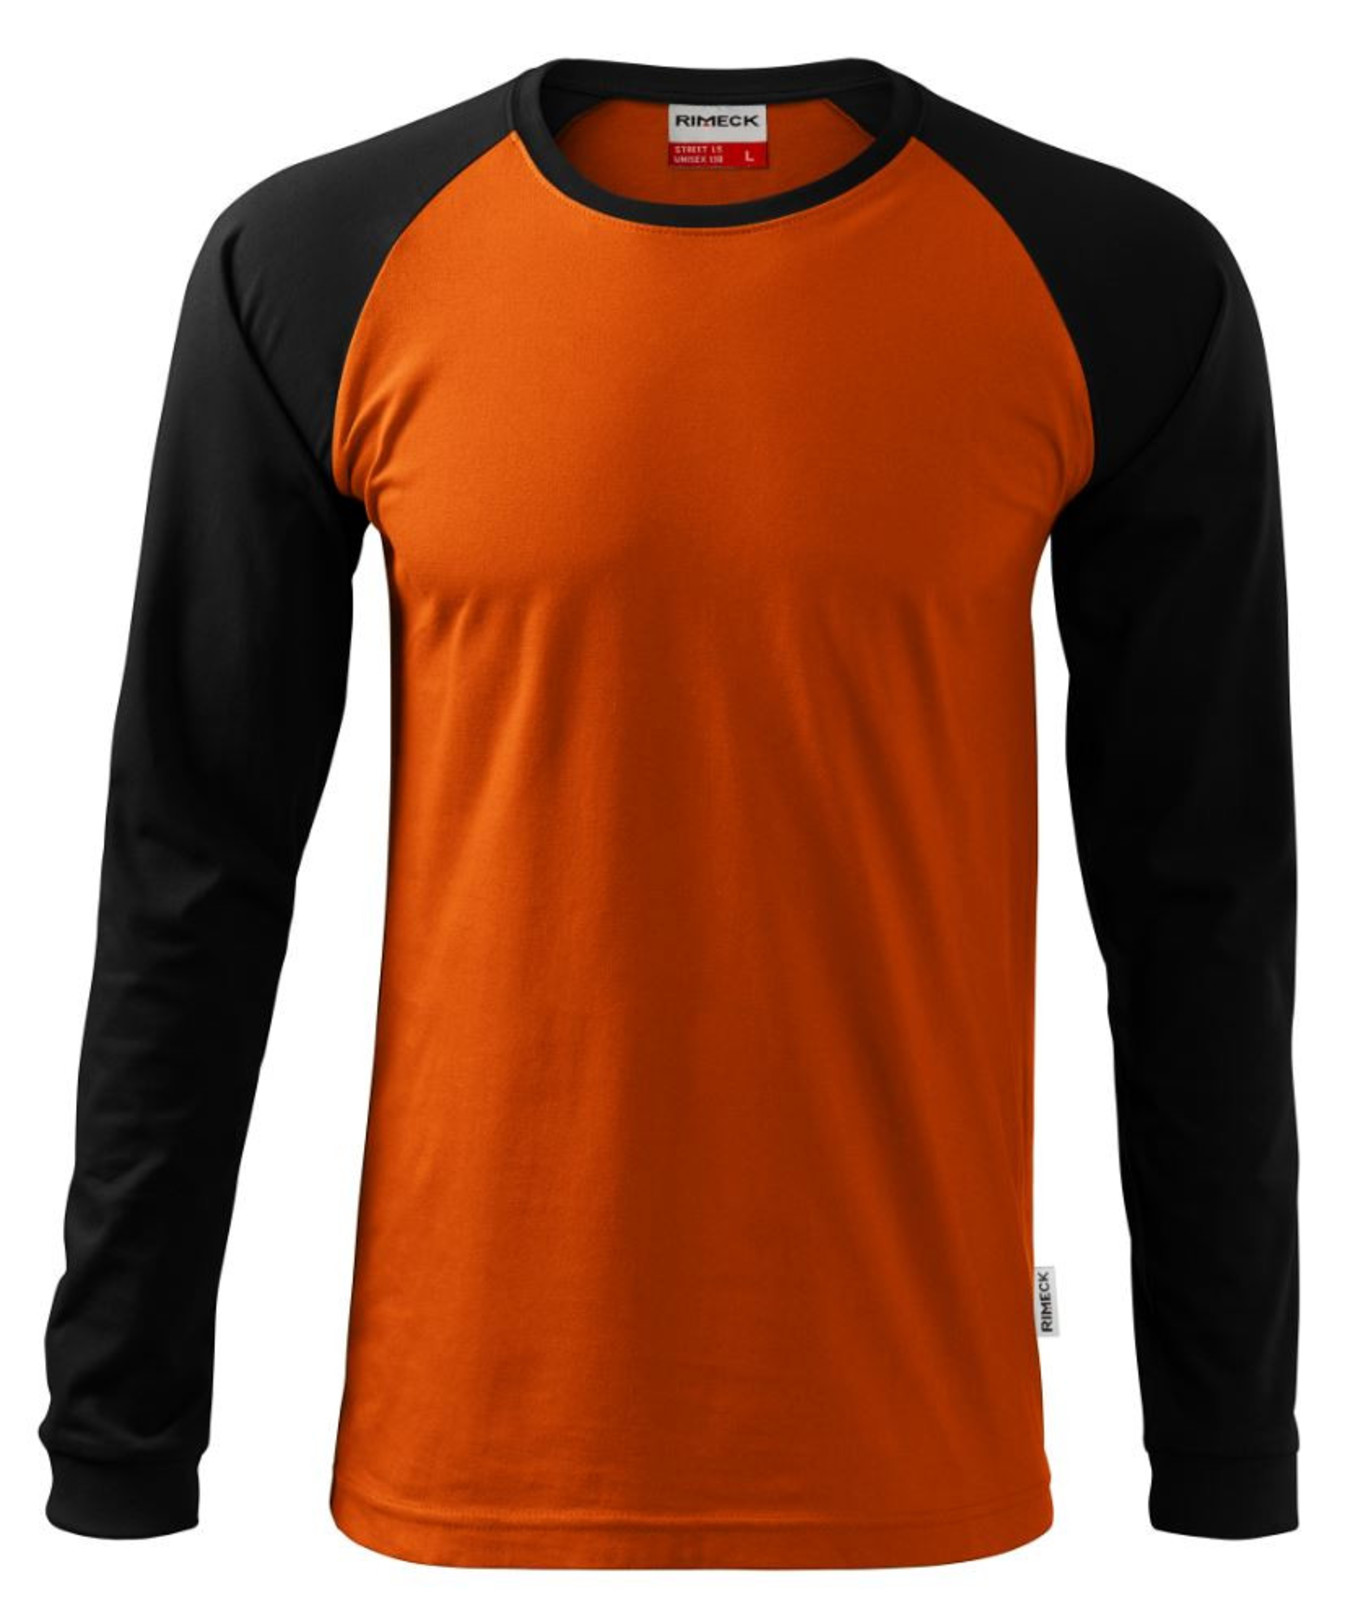 Unisex tričko s dlhým rukávom Rimeck Street LS 130 - veľkosť: S, farba: oranžová/čierna